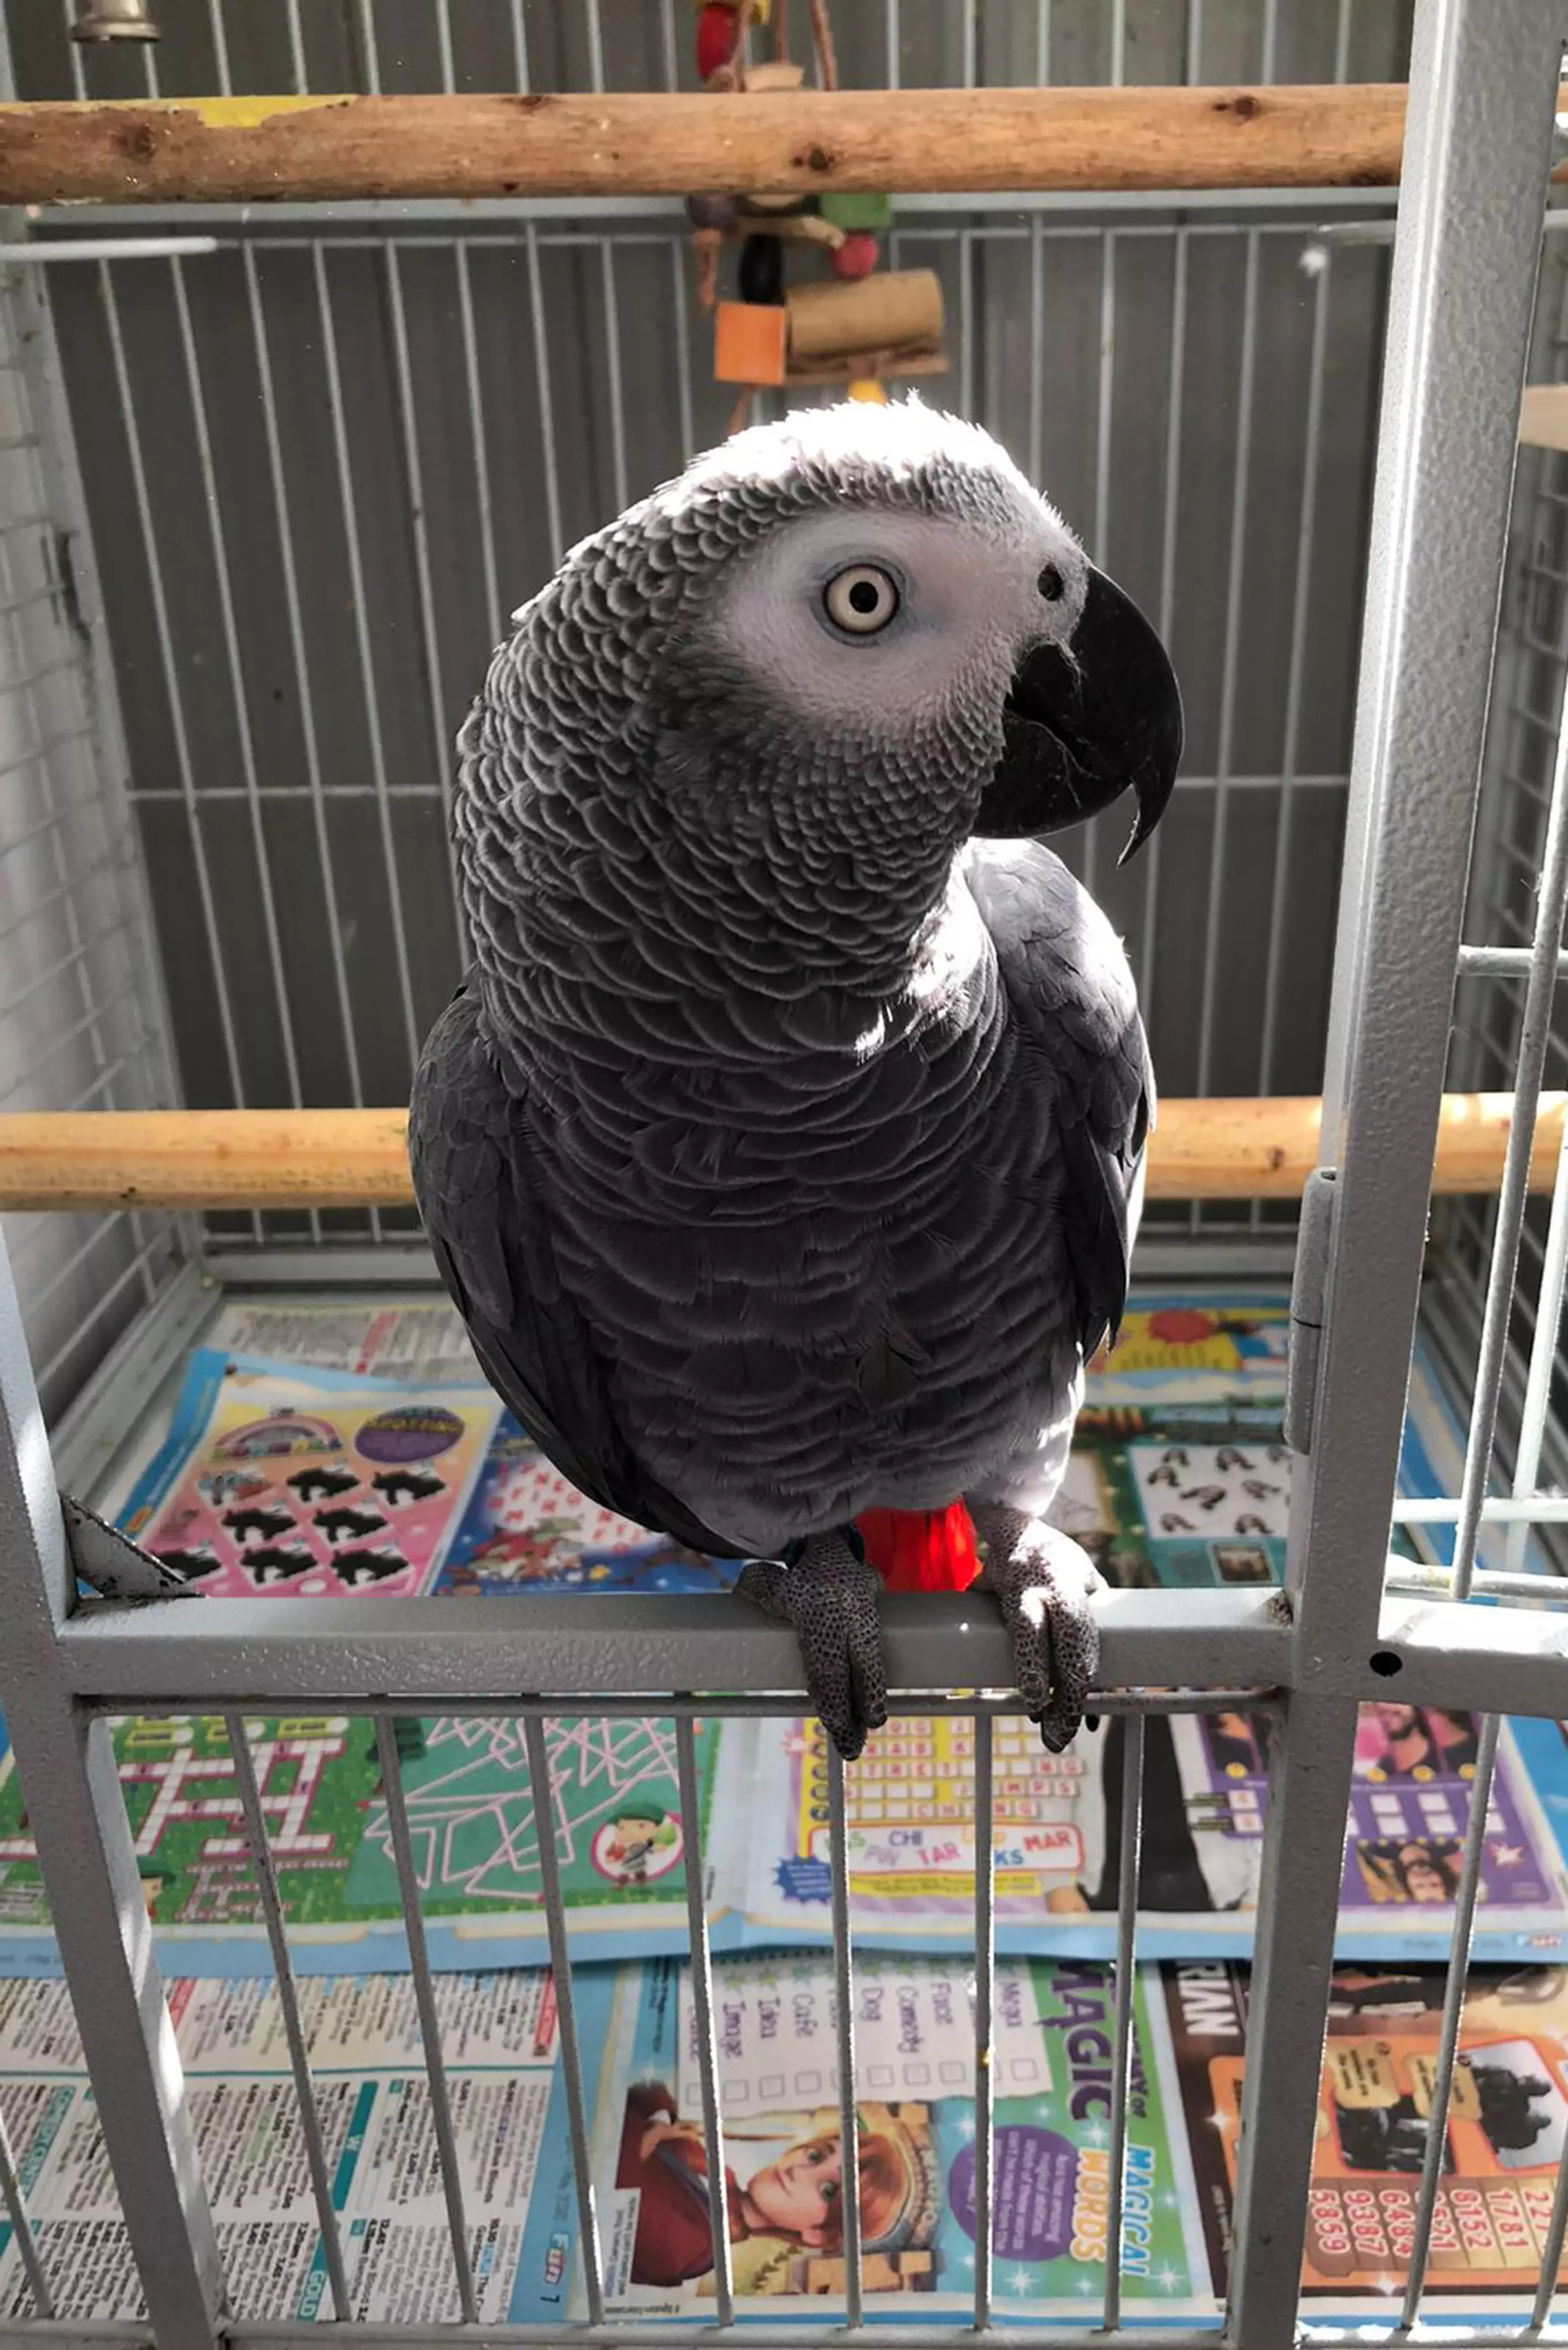 Bertie the parrot.